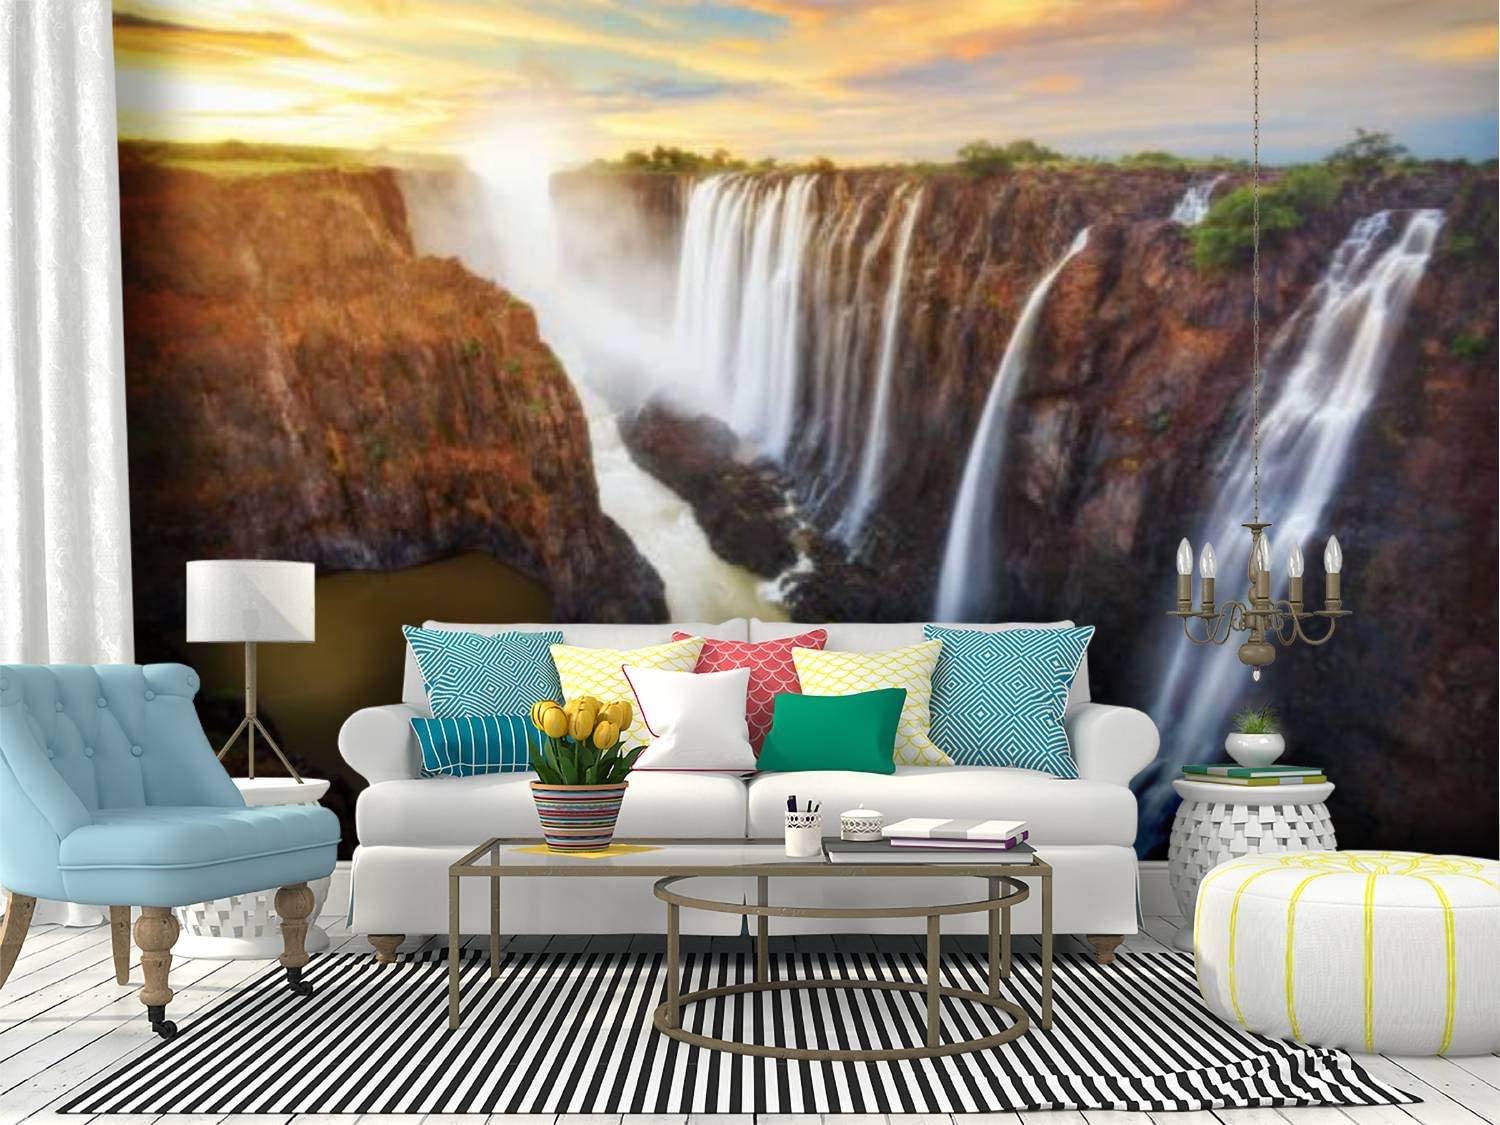 Zambia Wallpapers